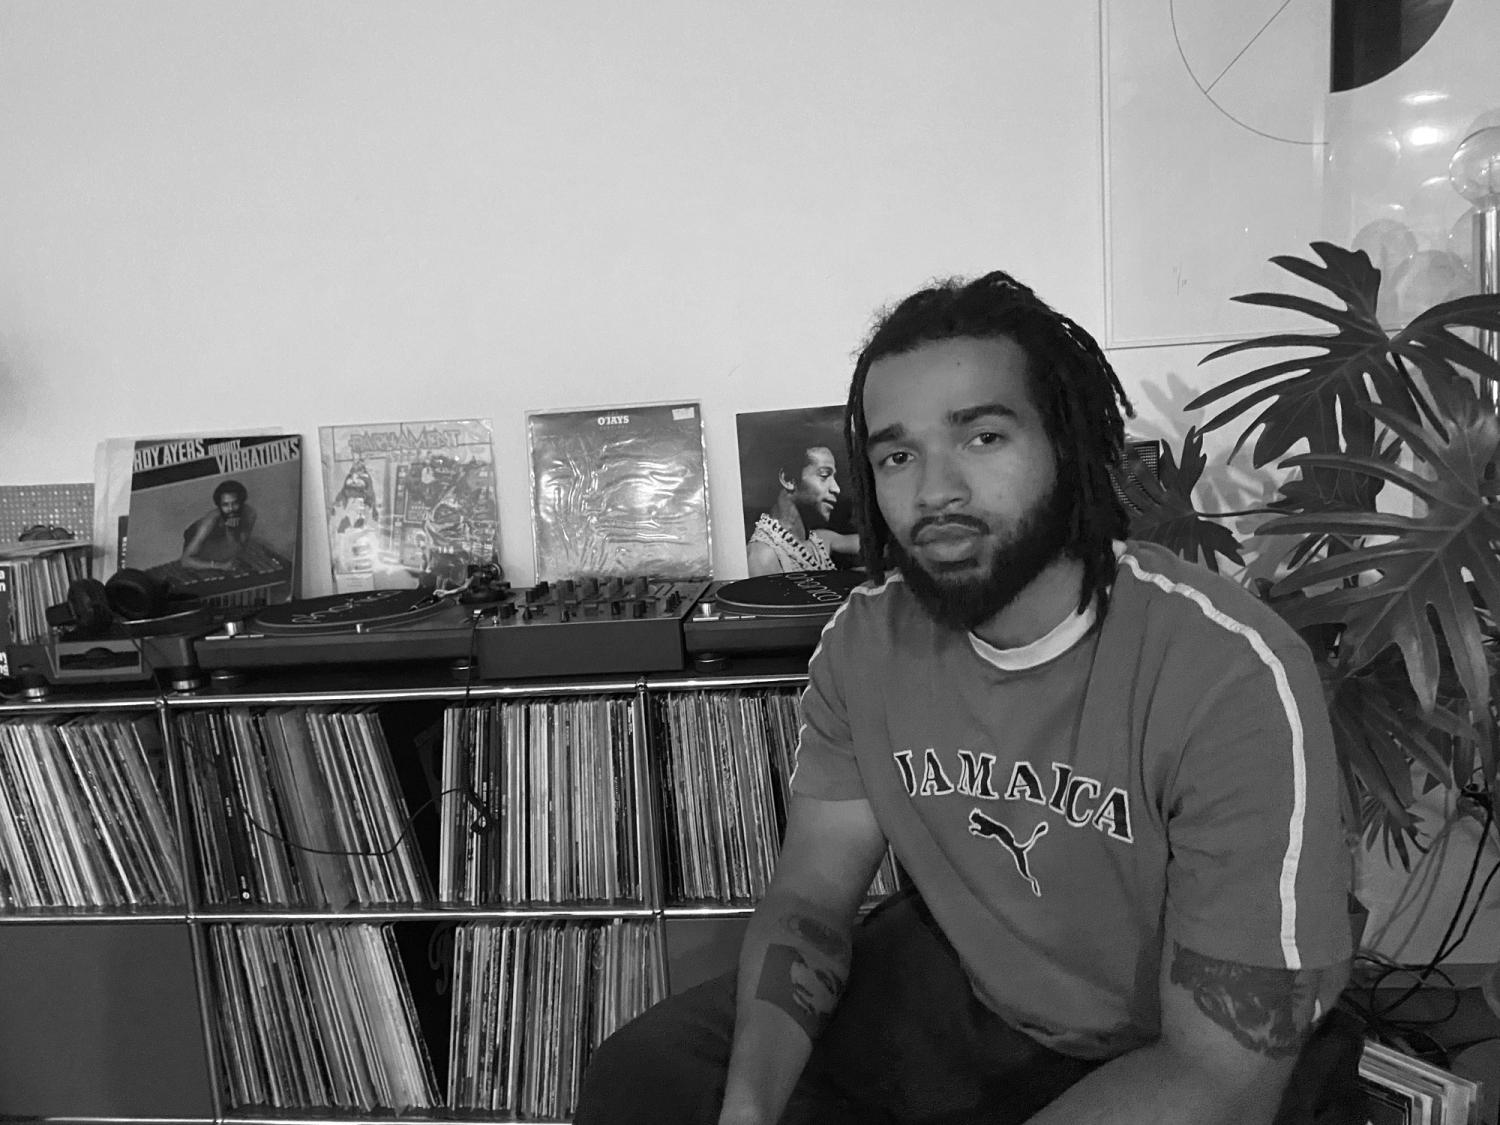 Eine schwarzweiss Fotografie. In der rechten Bildhälfte sitzt eine Schwarze Person mit Bart und mittellangen Dreadlocks. Dahinter ein Regal mit Musikplatten. 